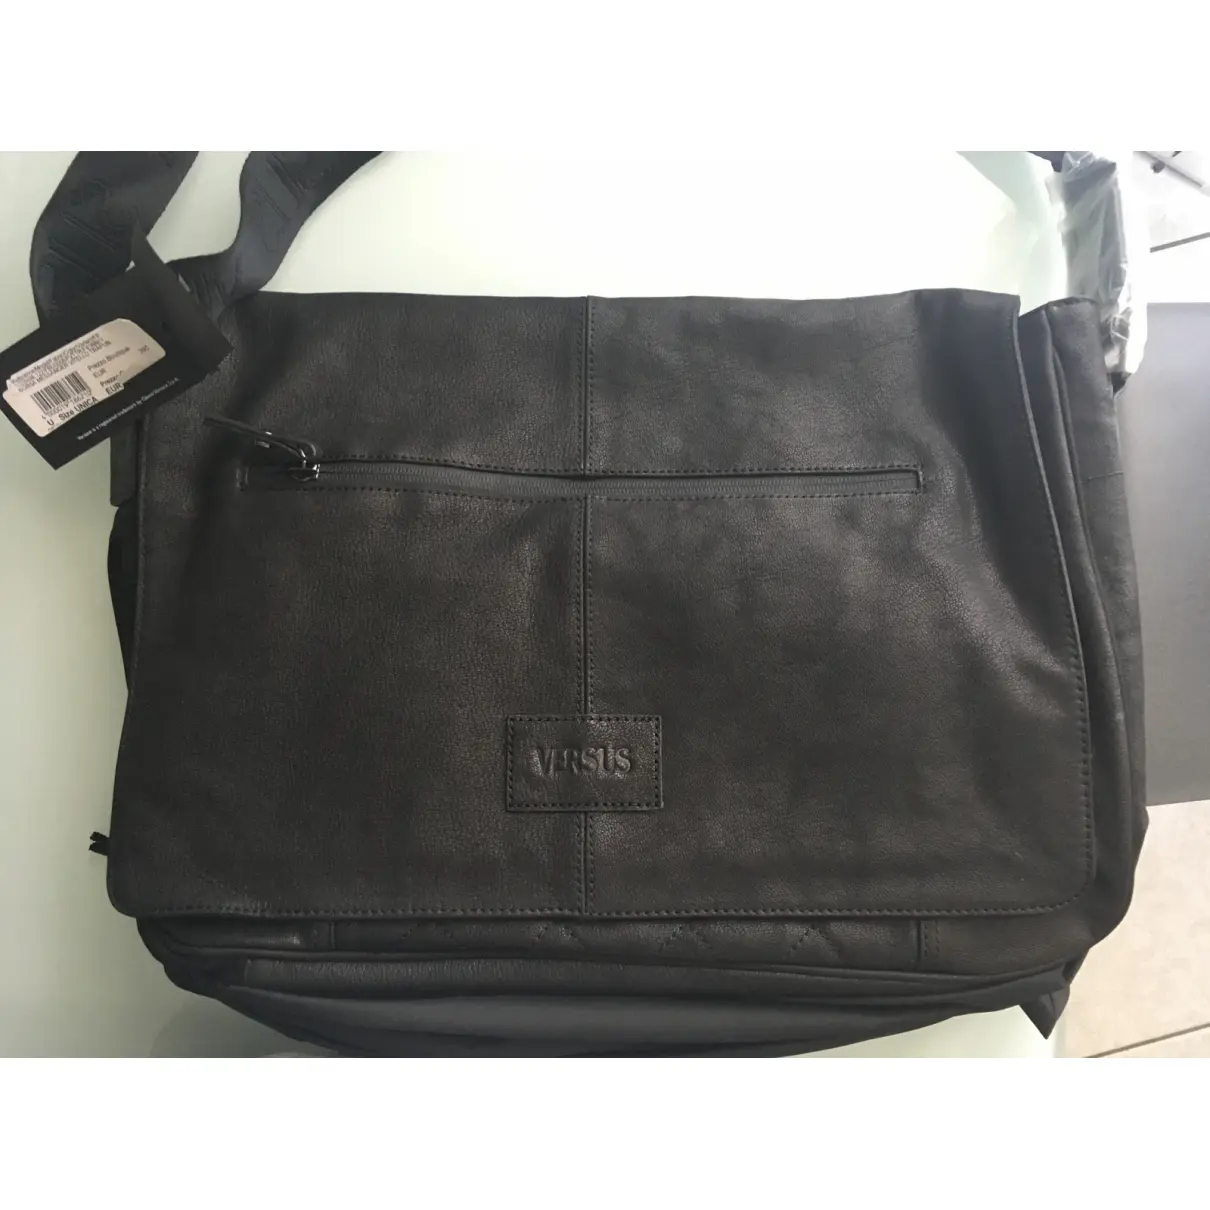 Versus Leather satchel for sale - Vintage